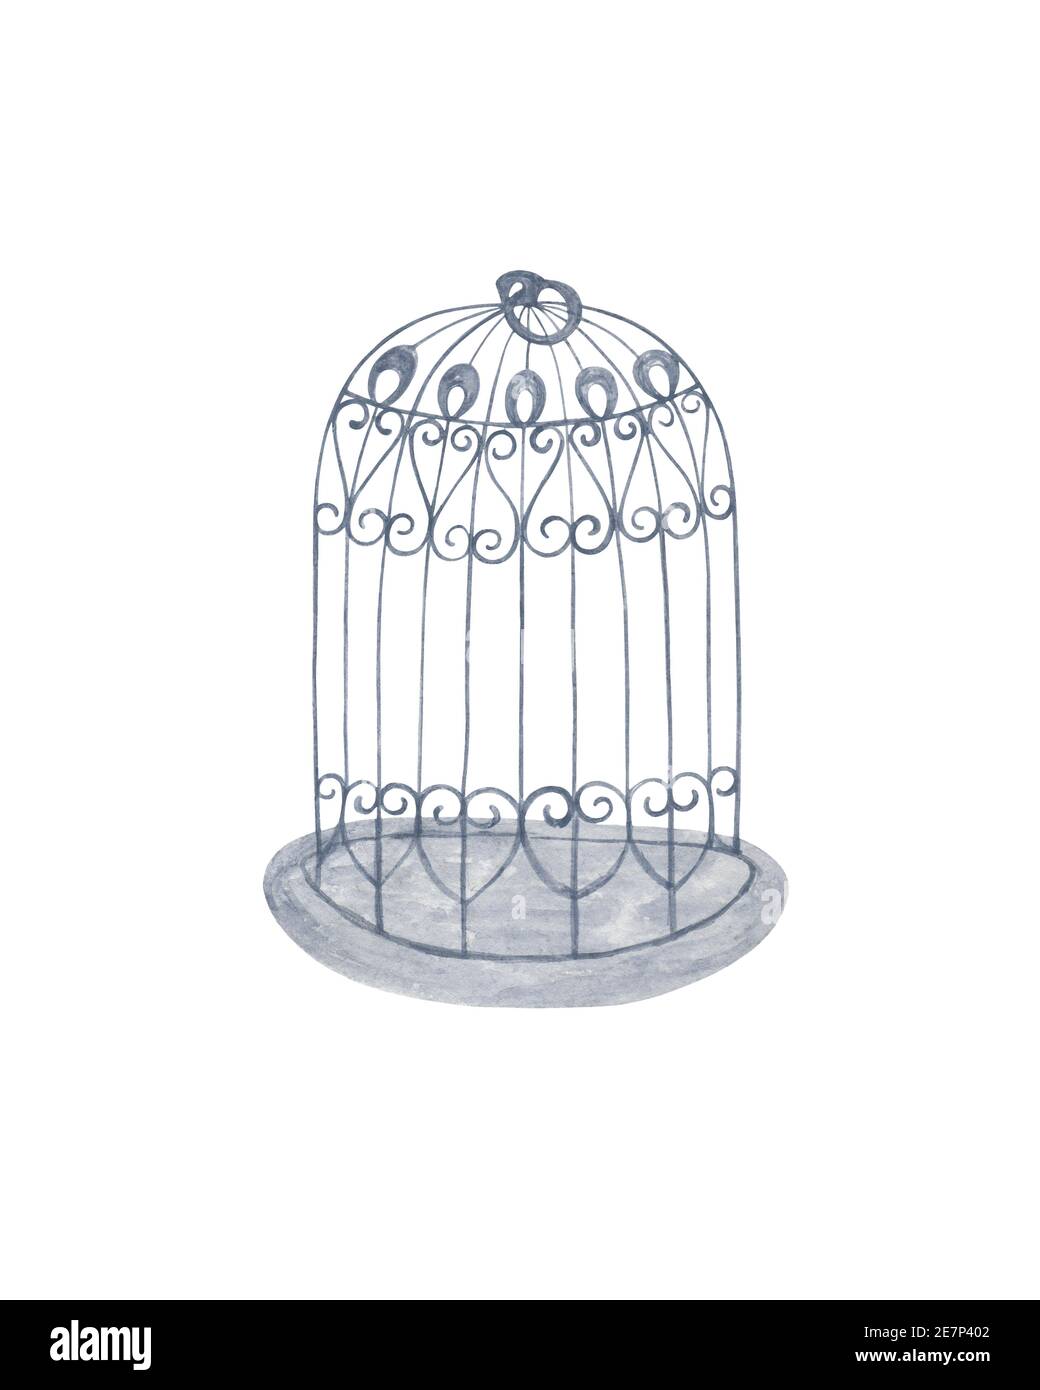 Jaula de aves en estilo vintage ilustración acuarela para el diseño de la ceremonia de boda, invitación, tarjetas de felicitación, fino objeto metálico exquisito, mascota en casa Foto de stock